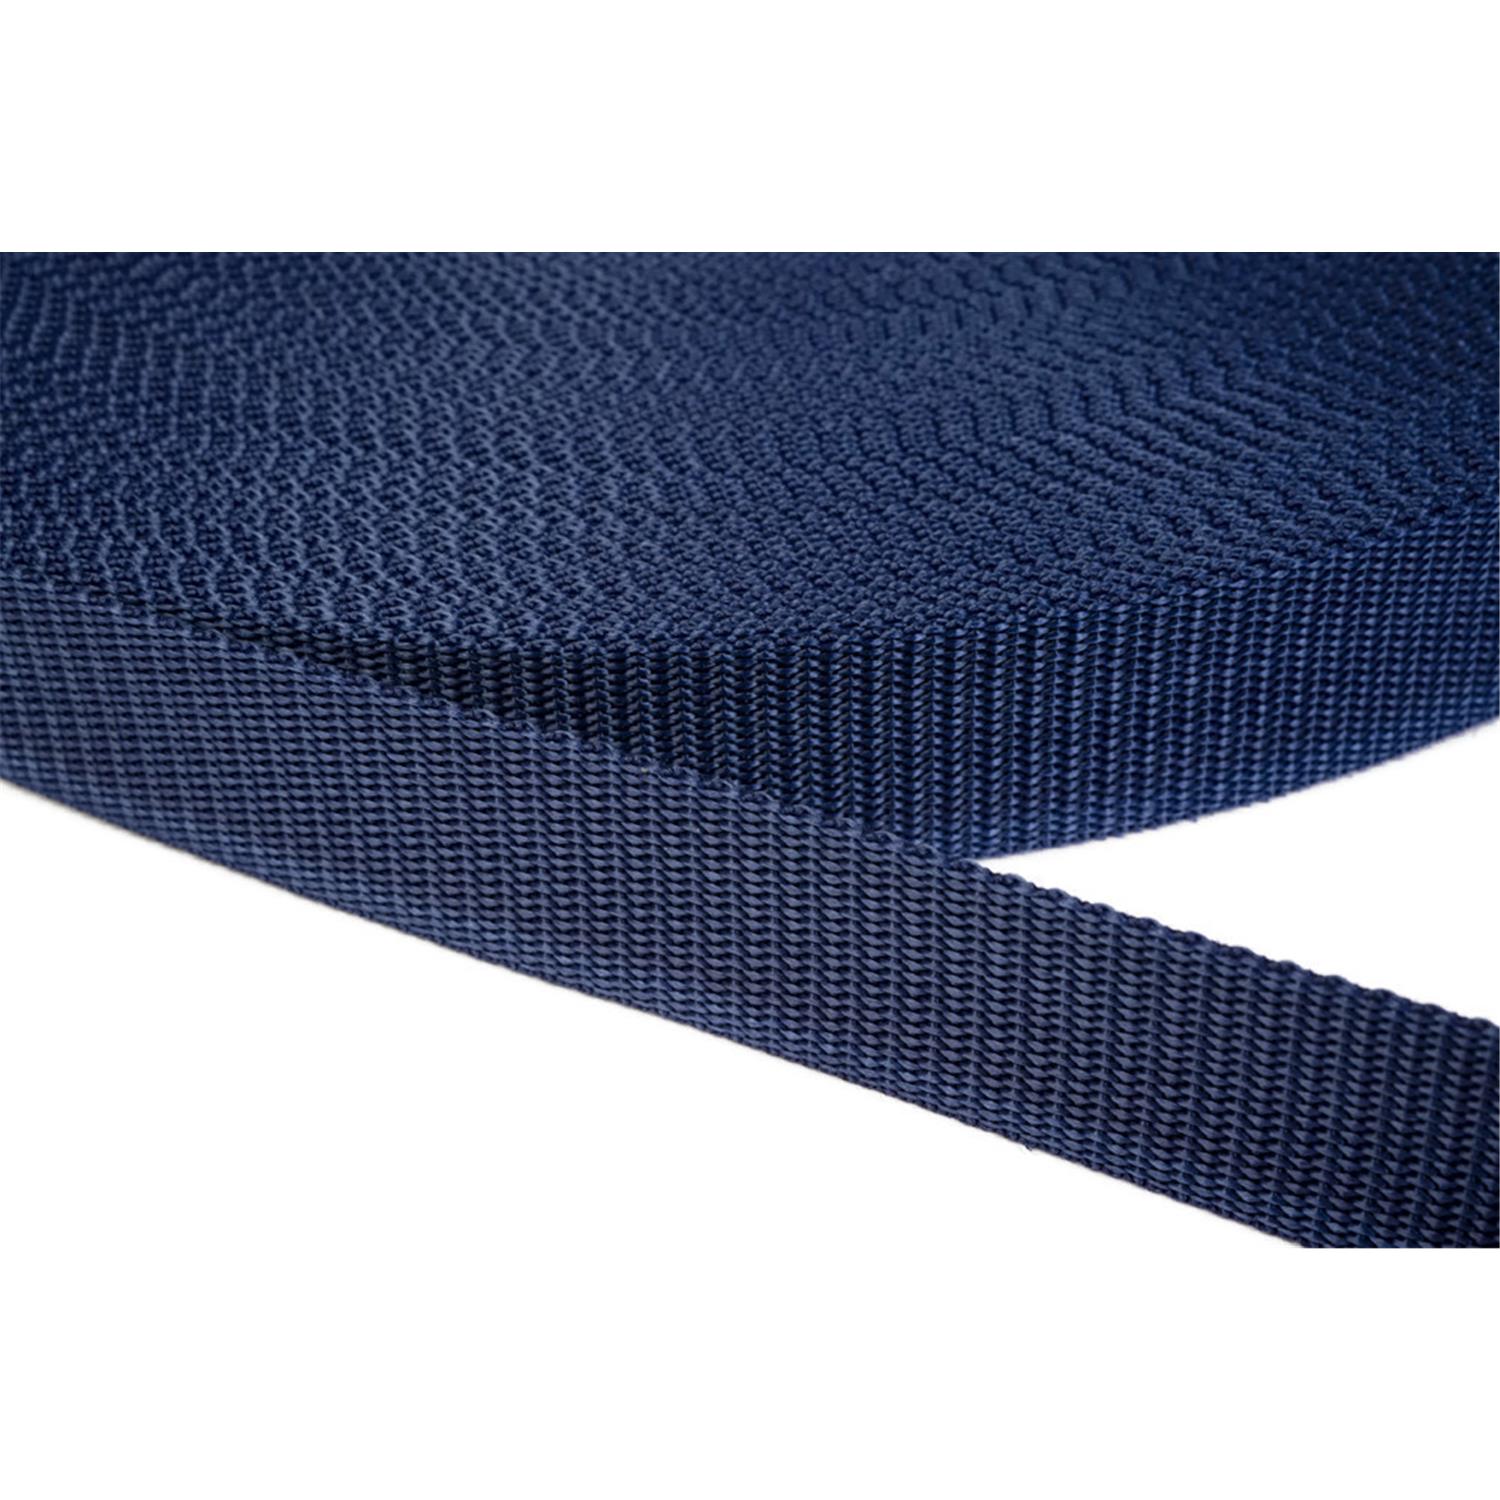 Gurtband 30mm breit aus Polypropylen in 41 Farben 27 - dunkelblau 12 Meter